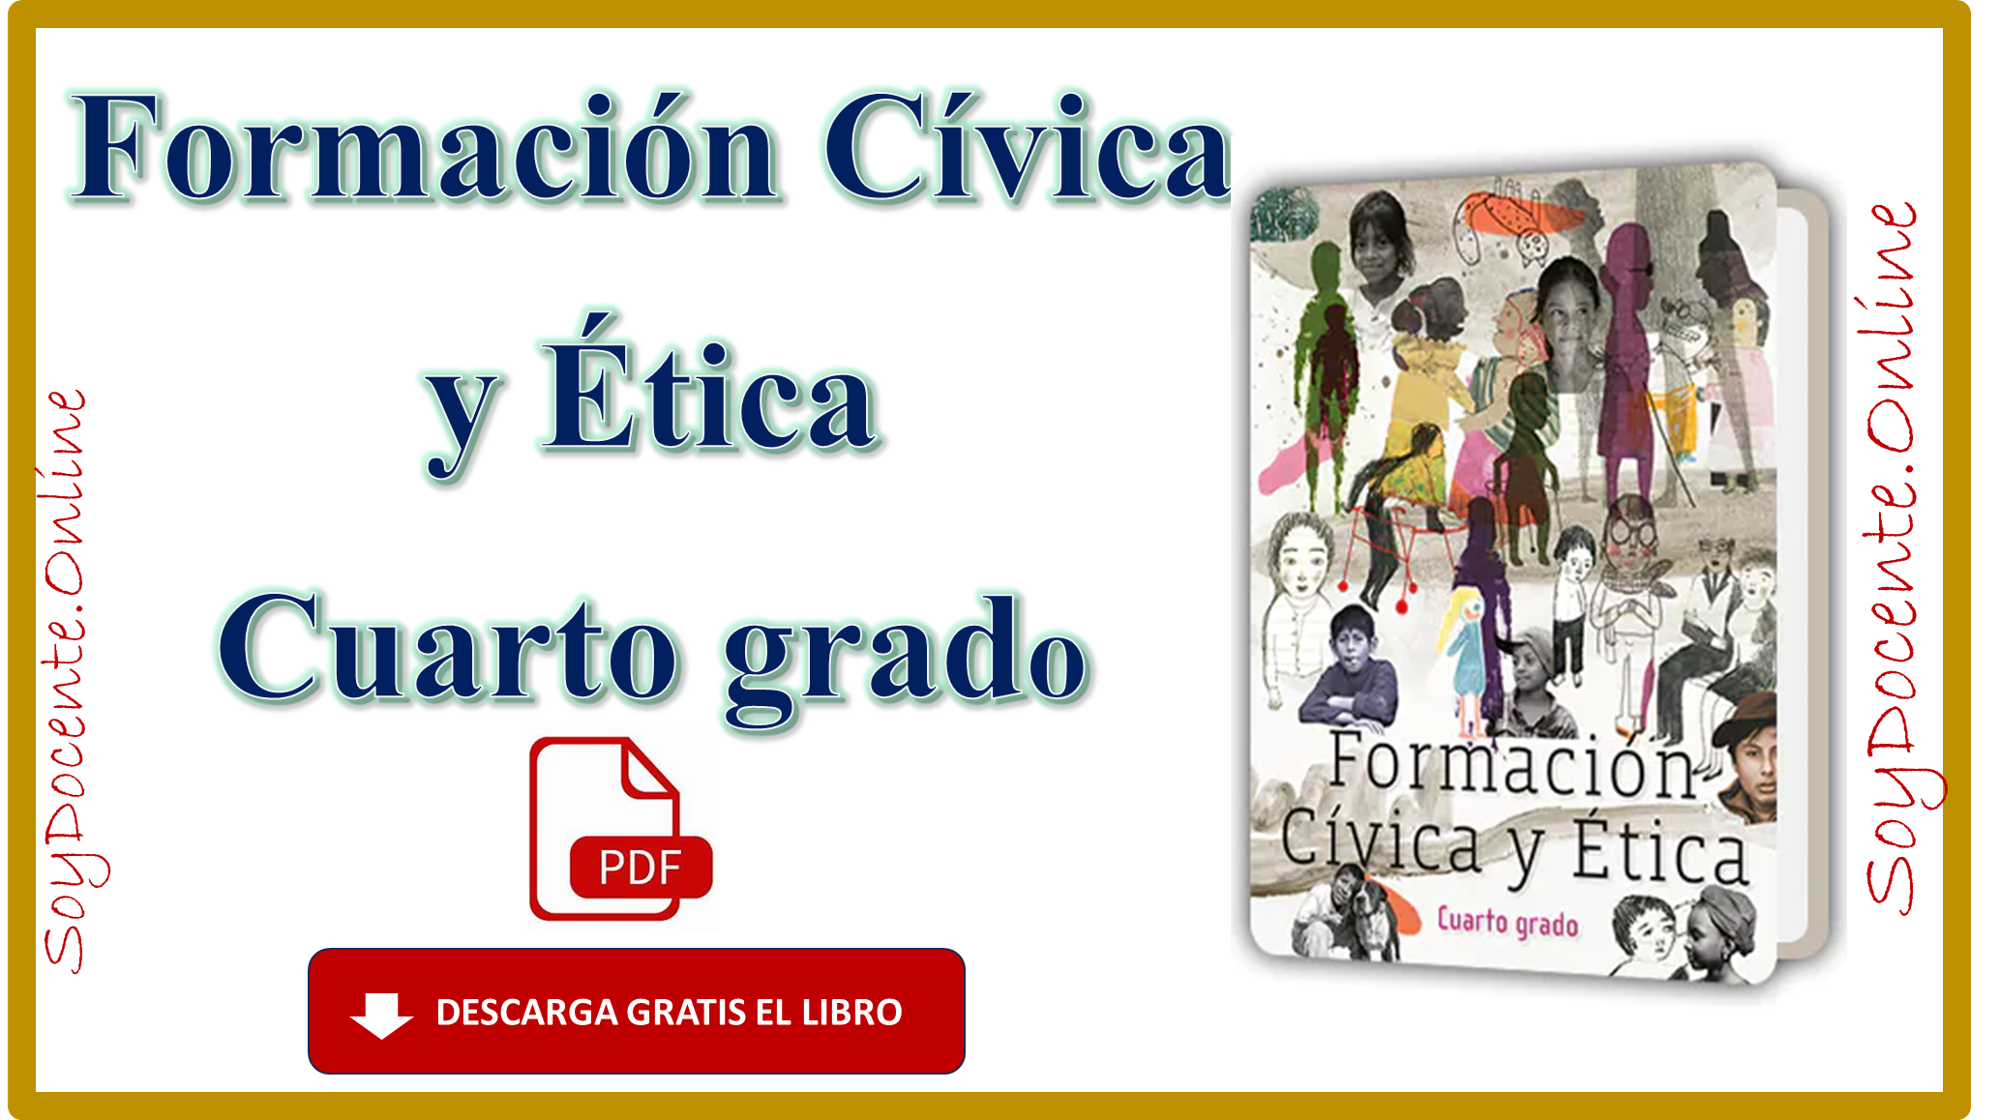 Aquí puedes descargar en PDF el Libro de Formación Cívica y Ética cuarto grado de Primaria, por la SEP, distribuido por la CONALITEG.